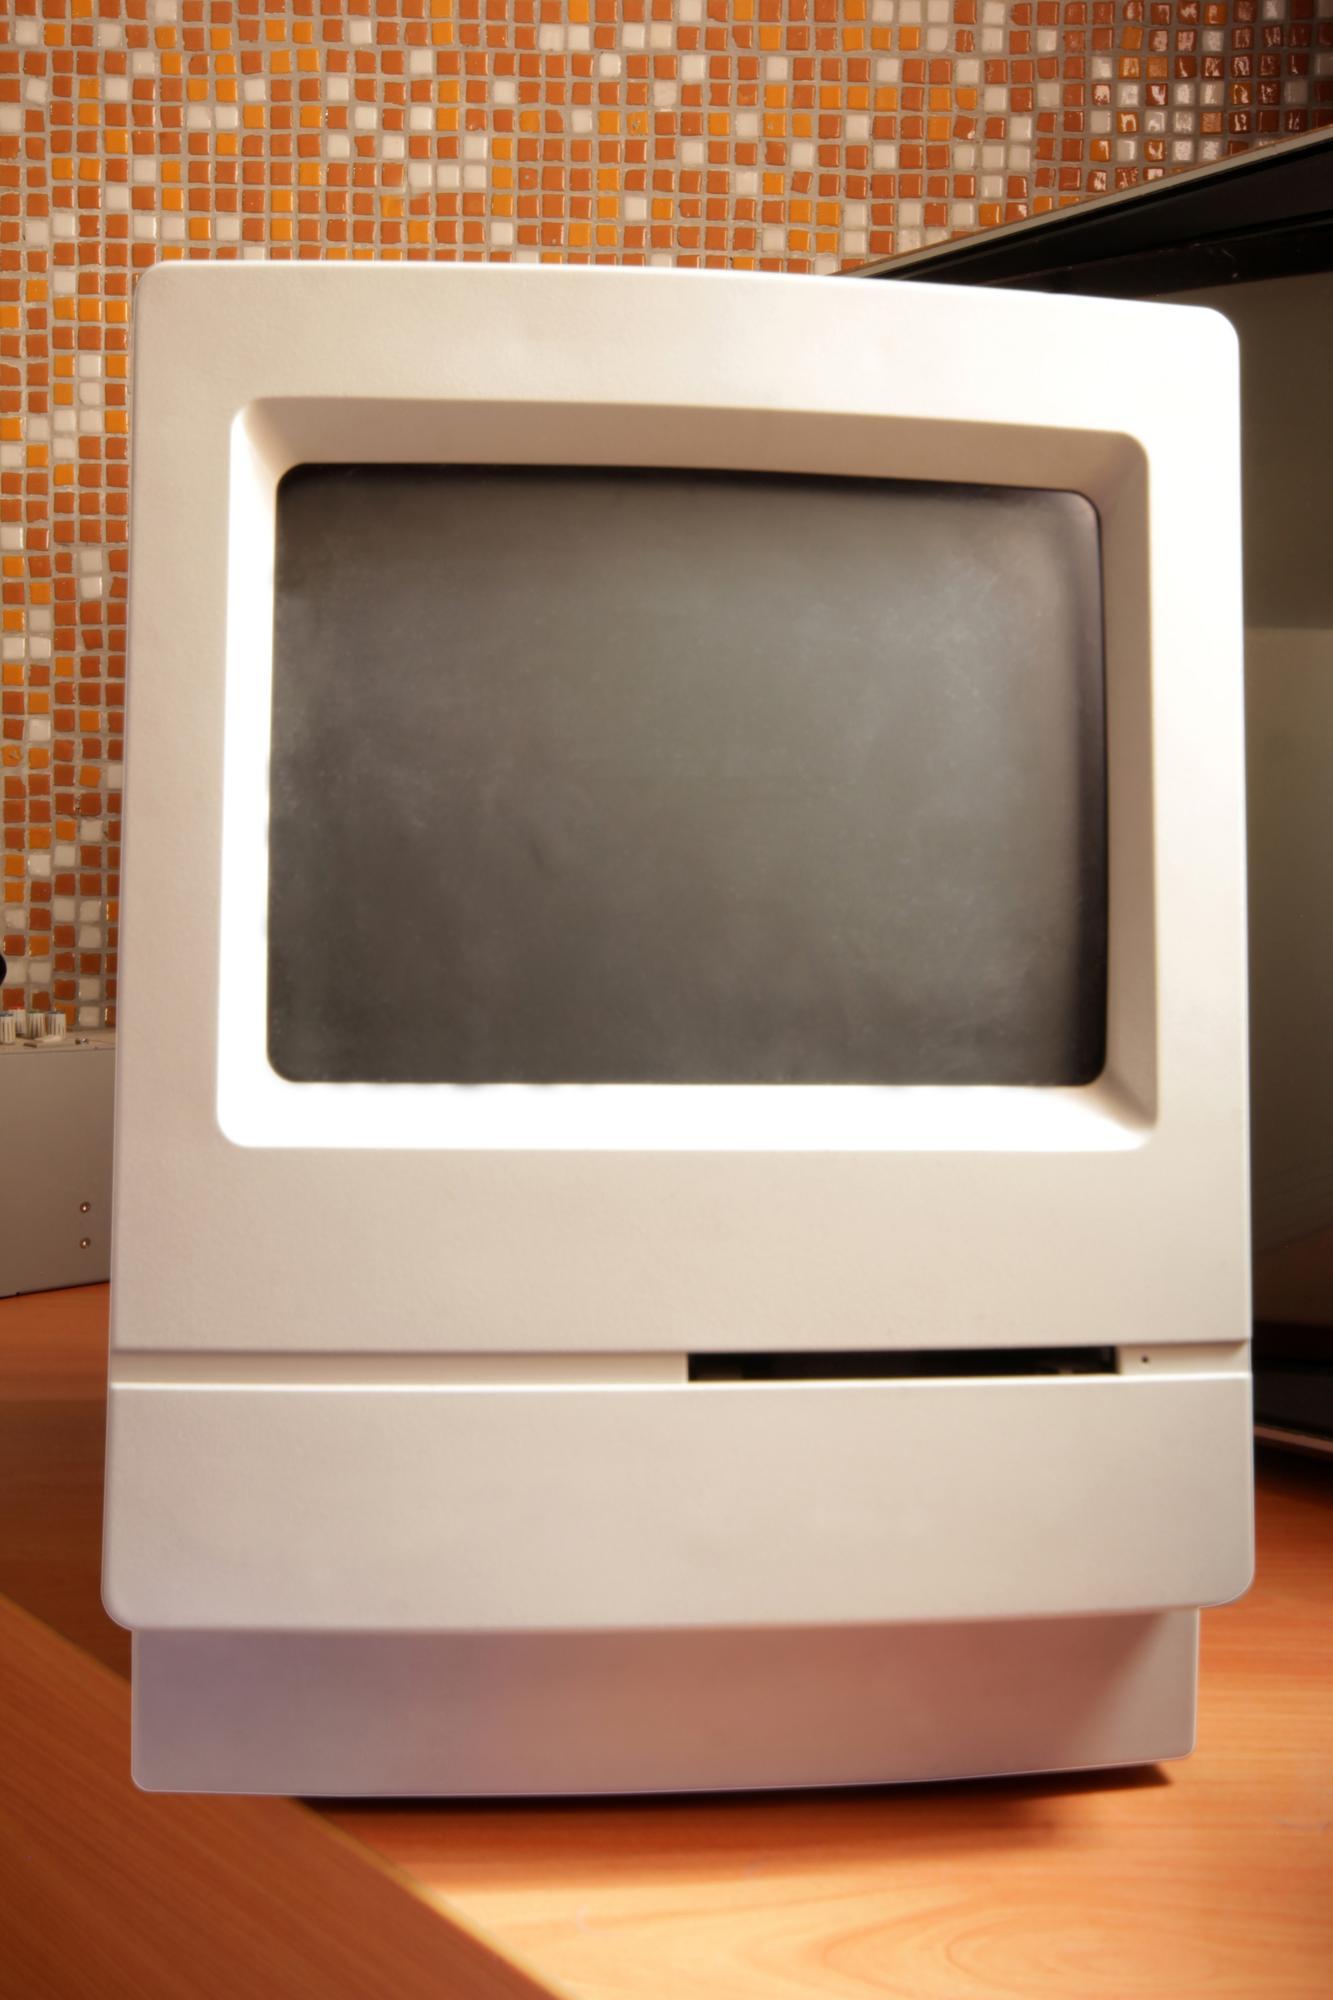 Geschichte von eLearning - Macintosh apple altes modell - mediahub360